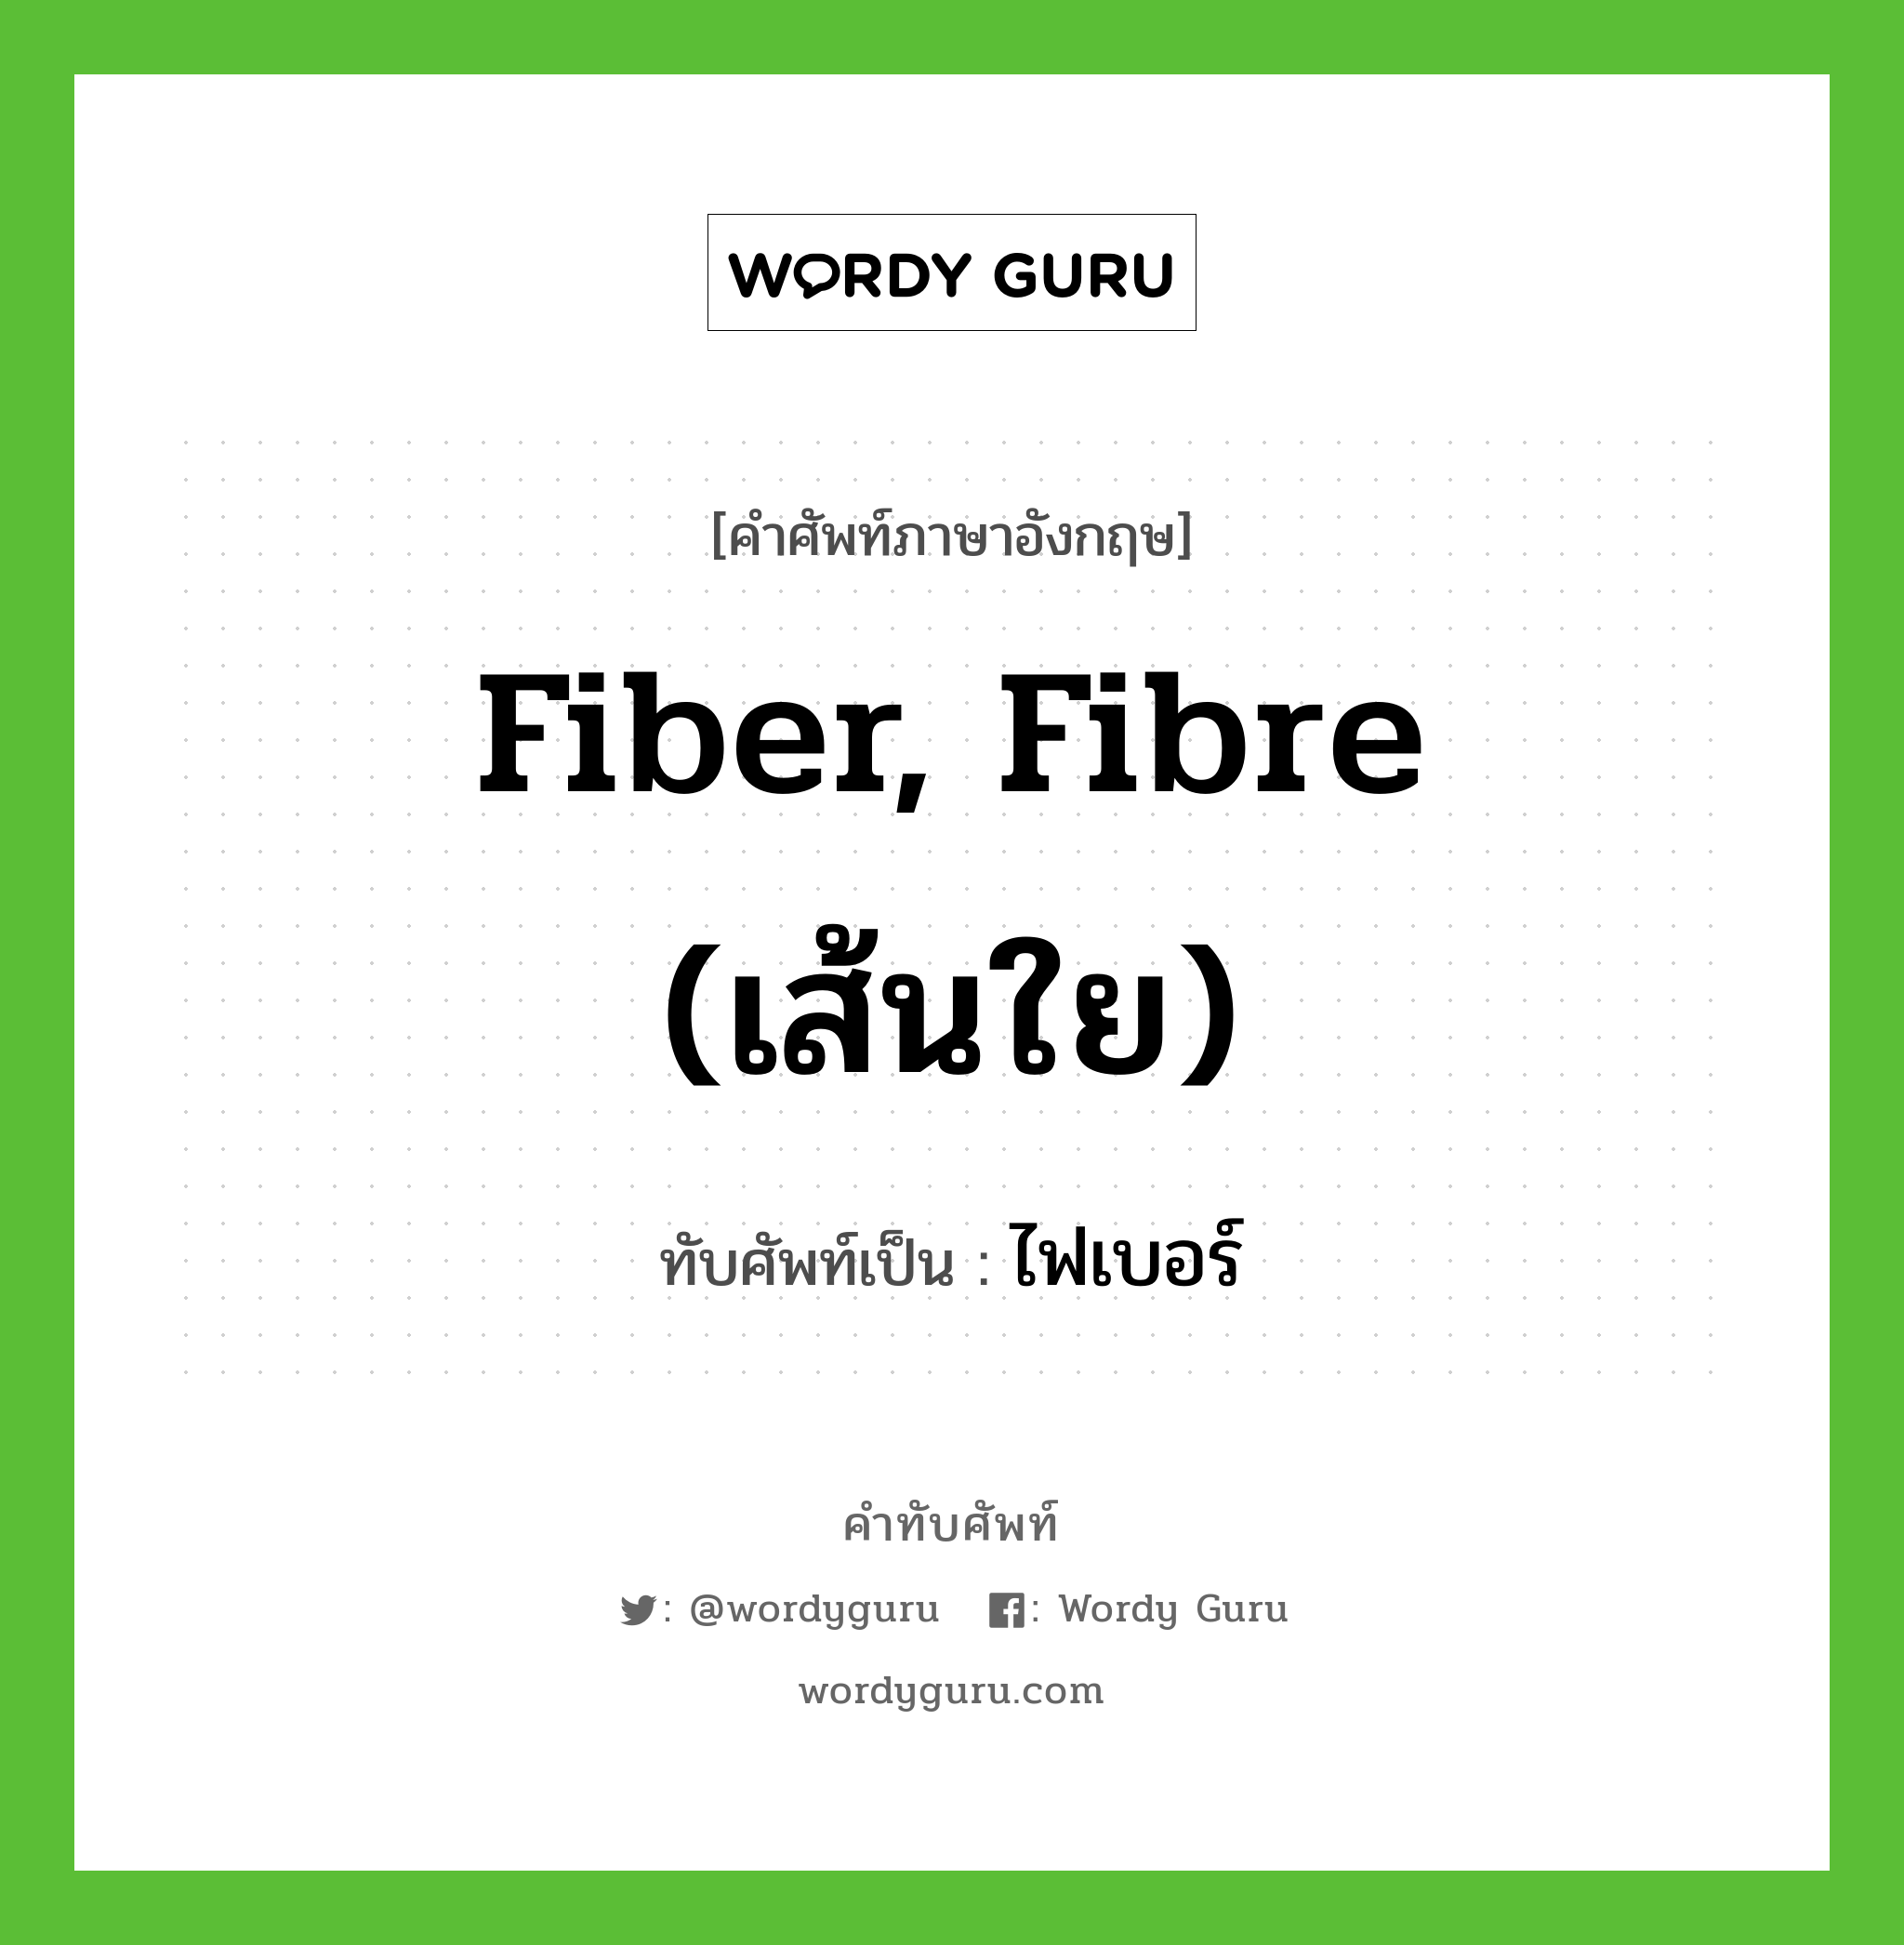 fiber, fibre (เส้นใย) เขียนเป็นคำไทยว่าอะไร?, คำศัพท์ภาษาอังกฤษ fiber, fibre (เส้นใย) ทับศัพท์เป็น ไฟเบอร์